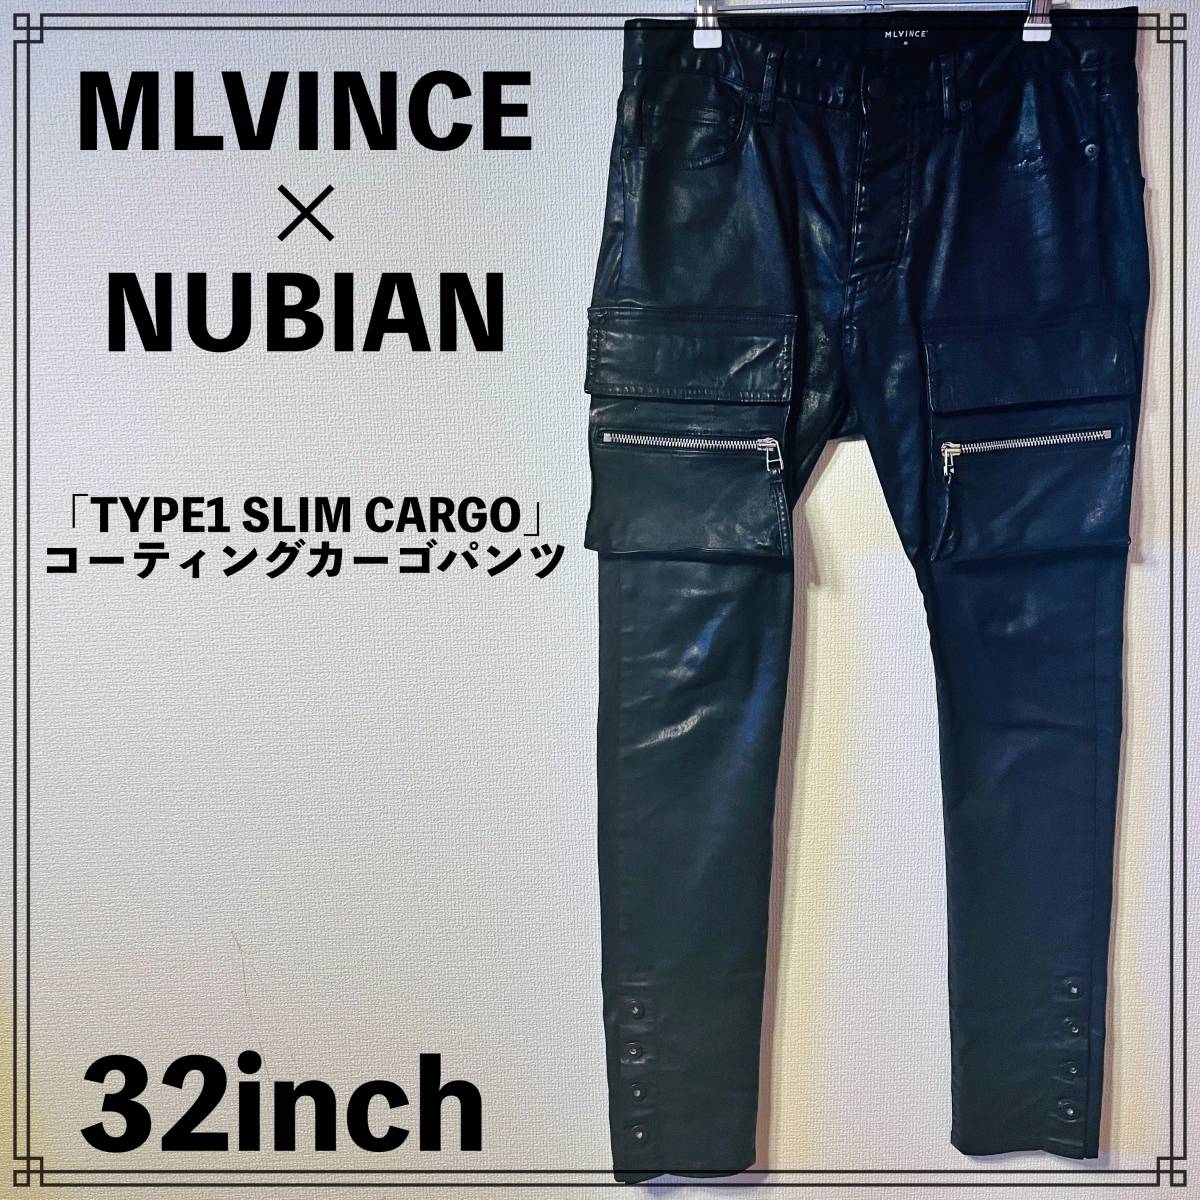 MLVINCE x NUBIAN 「TYPE1 SLIM CARGO」 コーティングカーゴパンツ 